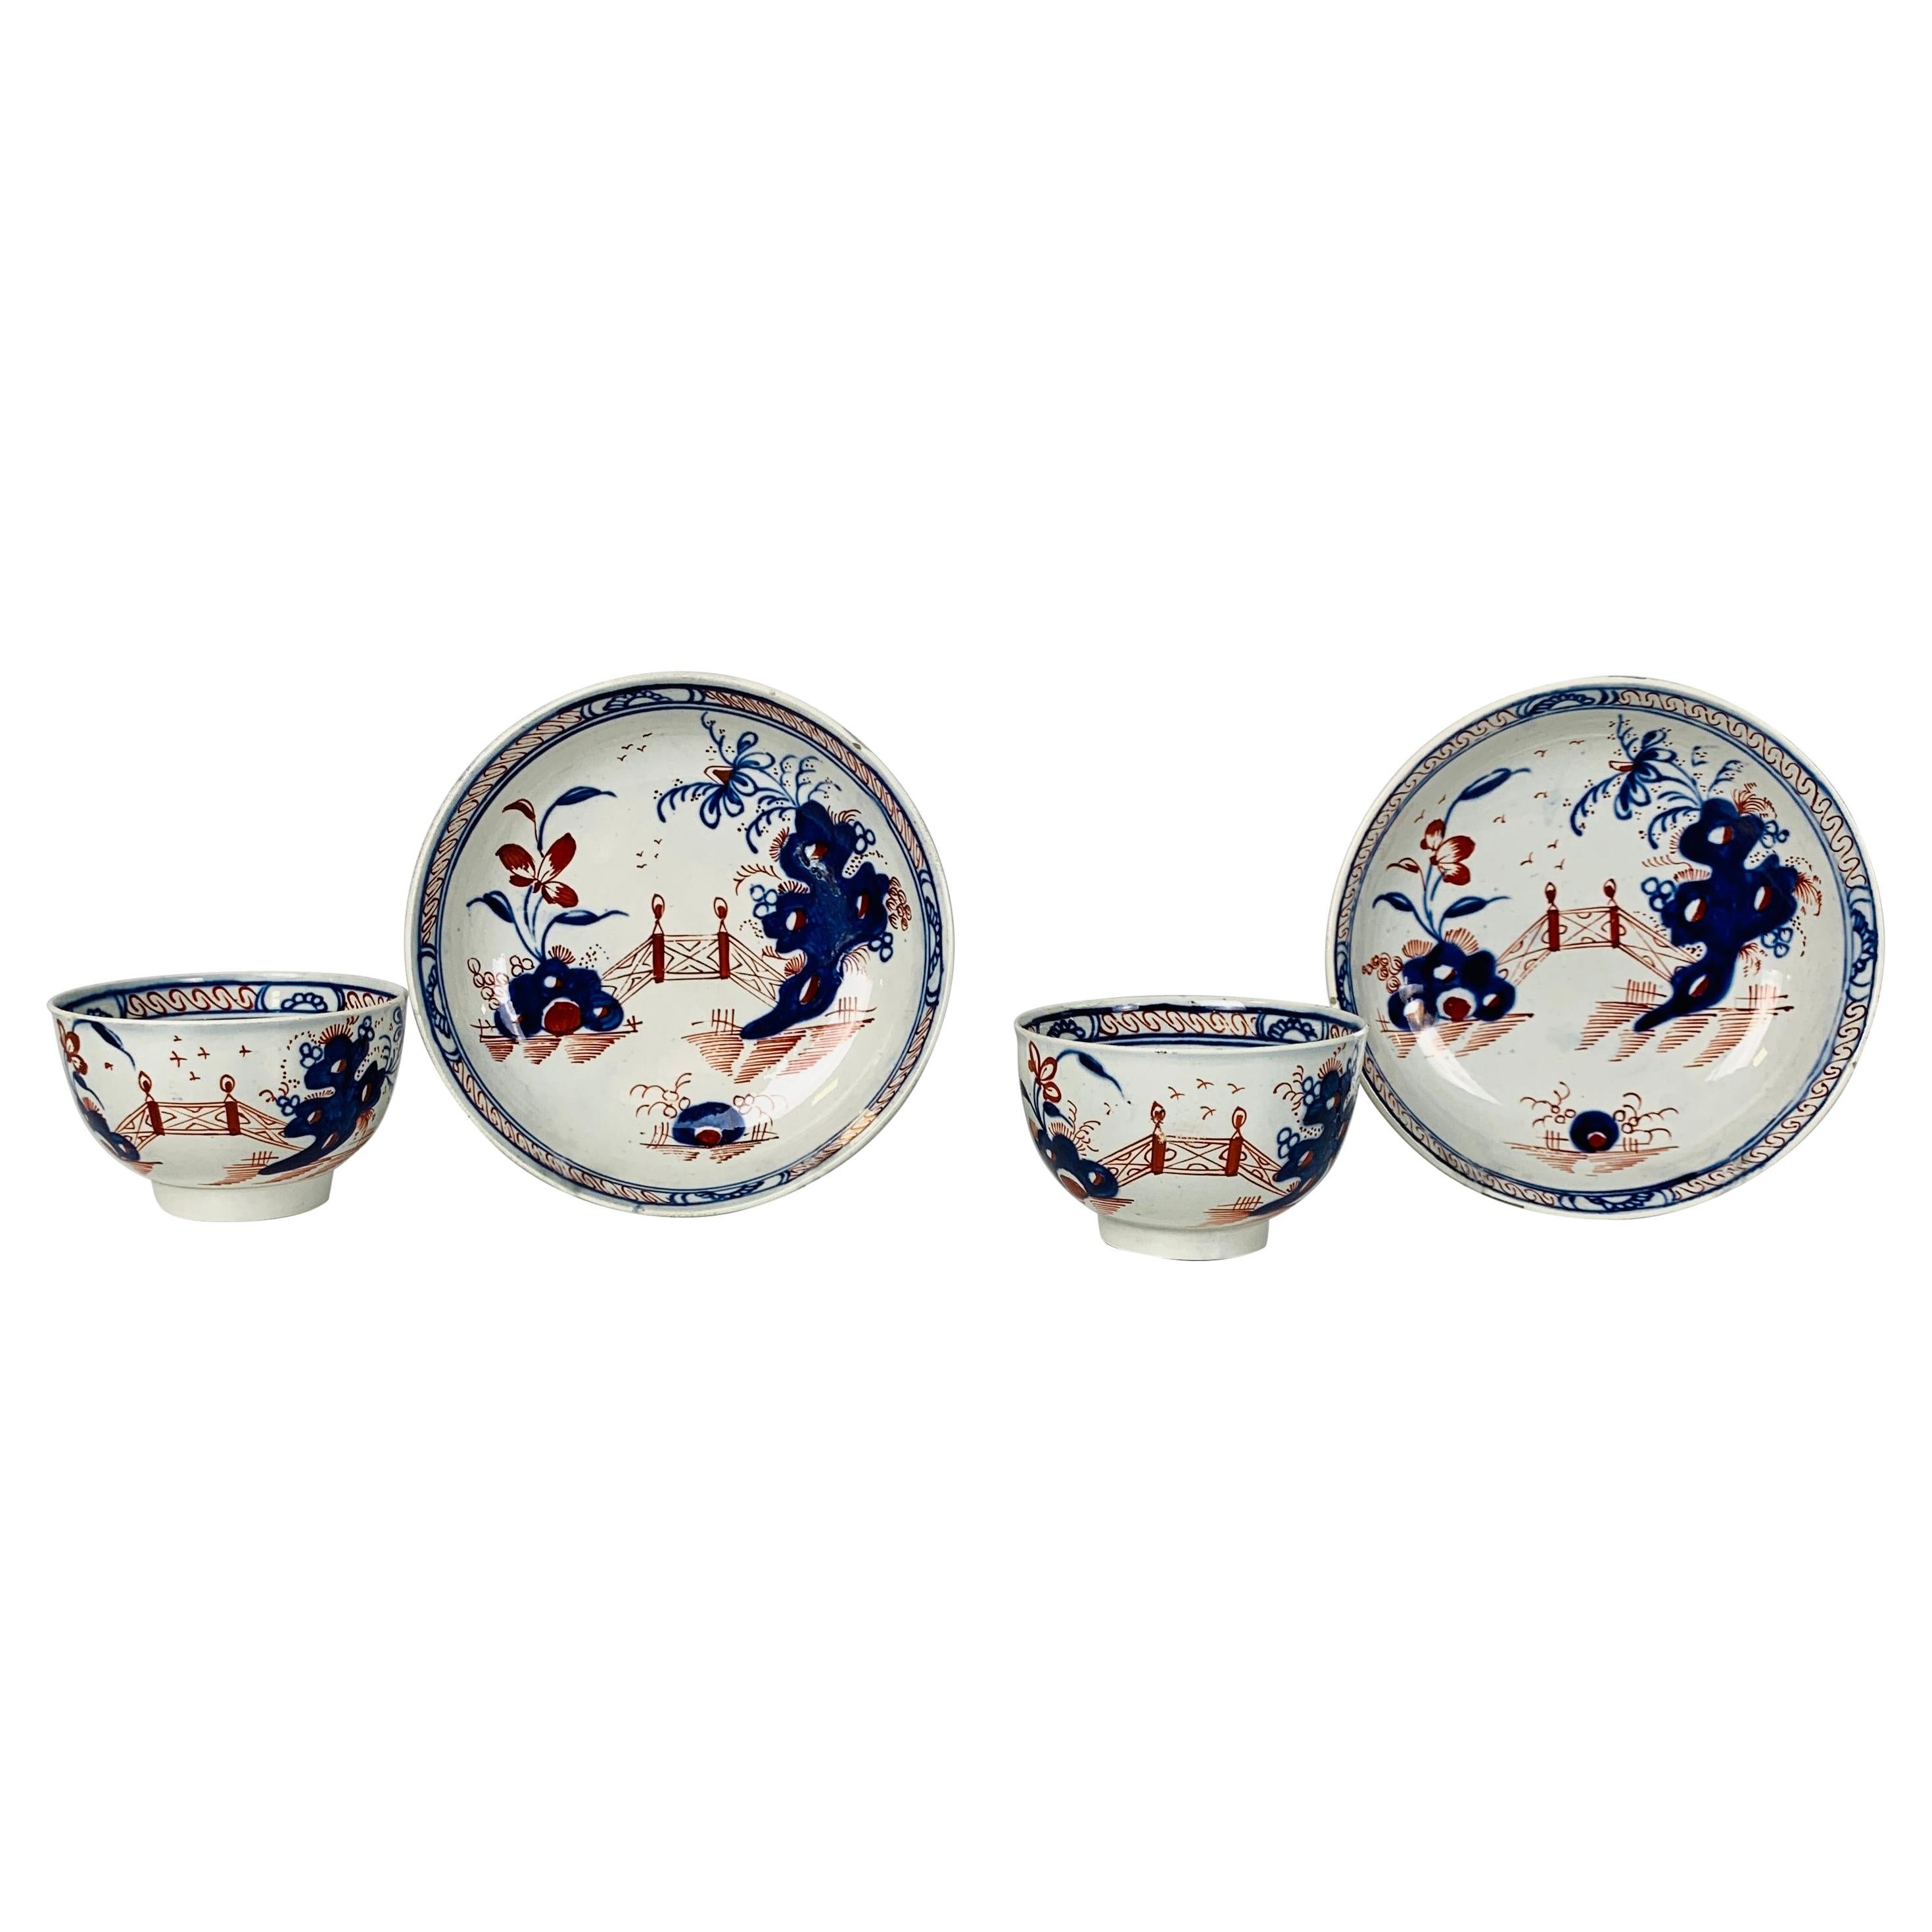 Pair Tea Bowls & Saucers Pearled Creamware Hand-Painted in Imari Colors 18th C